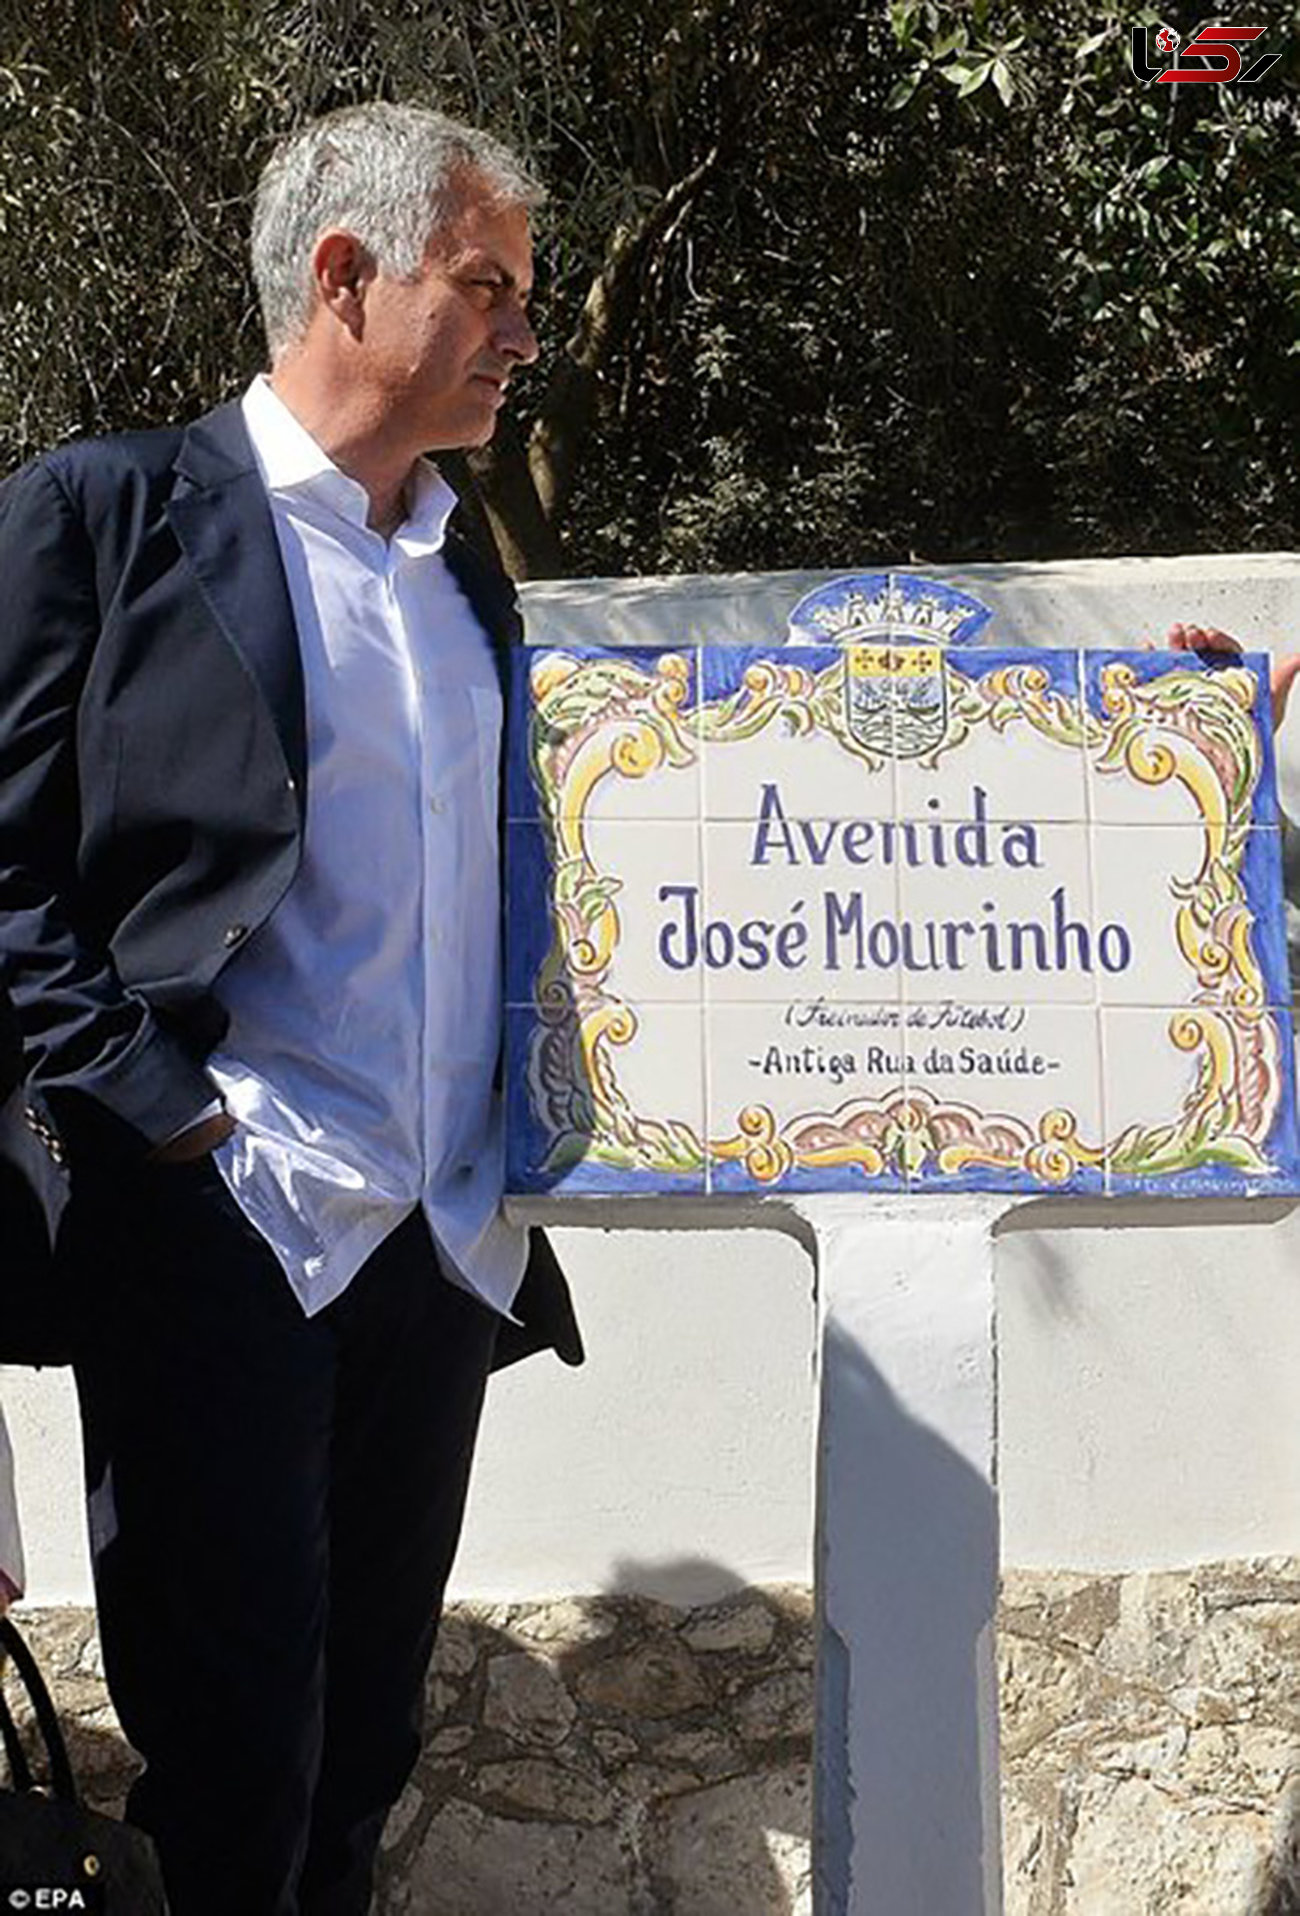 نام گذاری خیابانی در پرتغال به نام مورینیو